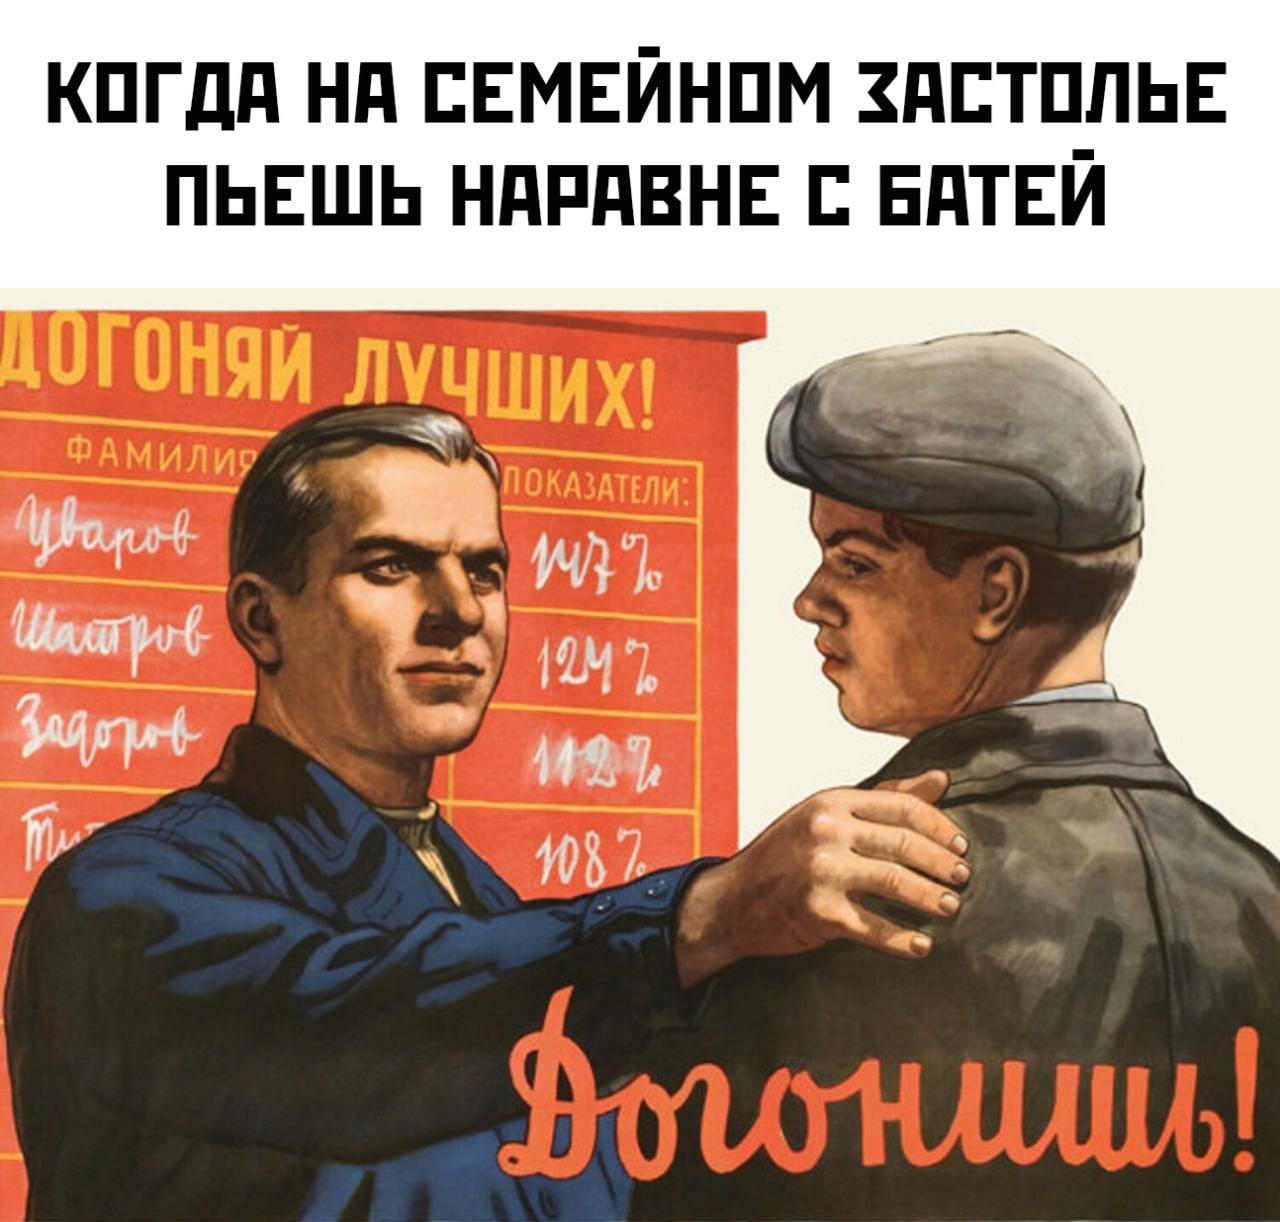 Напишешь догонишь. Советские плакаты товарищ. Прикольные переделанные советские плакаты. Советские плакаты про работу. Советские плакаты приколы юмор.